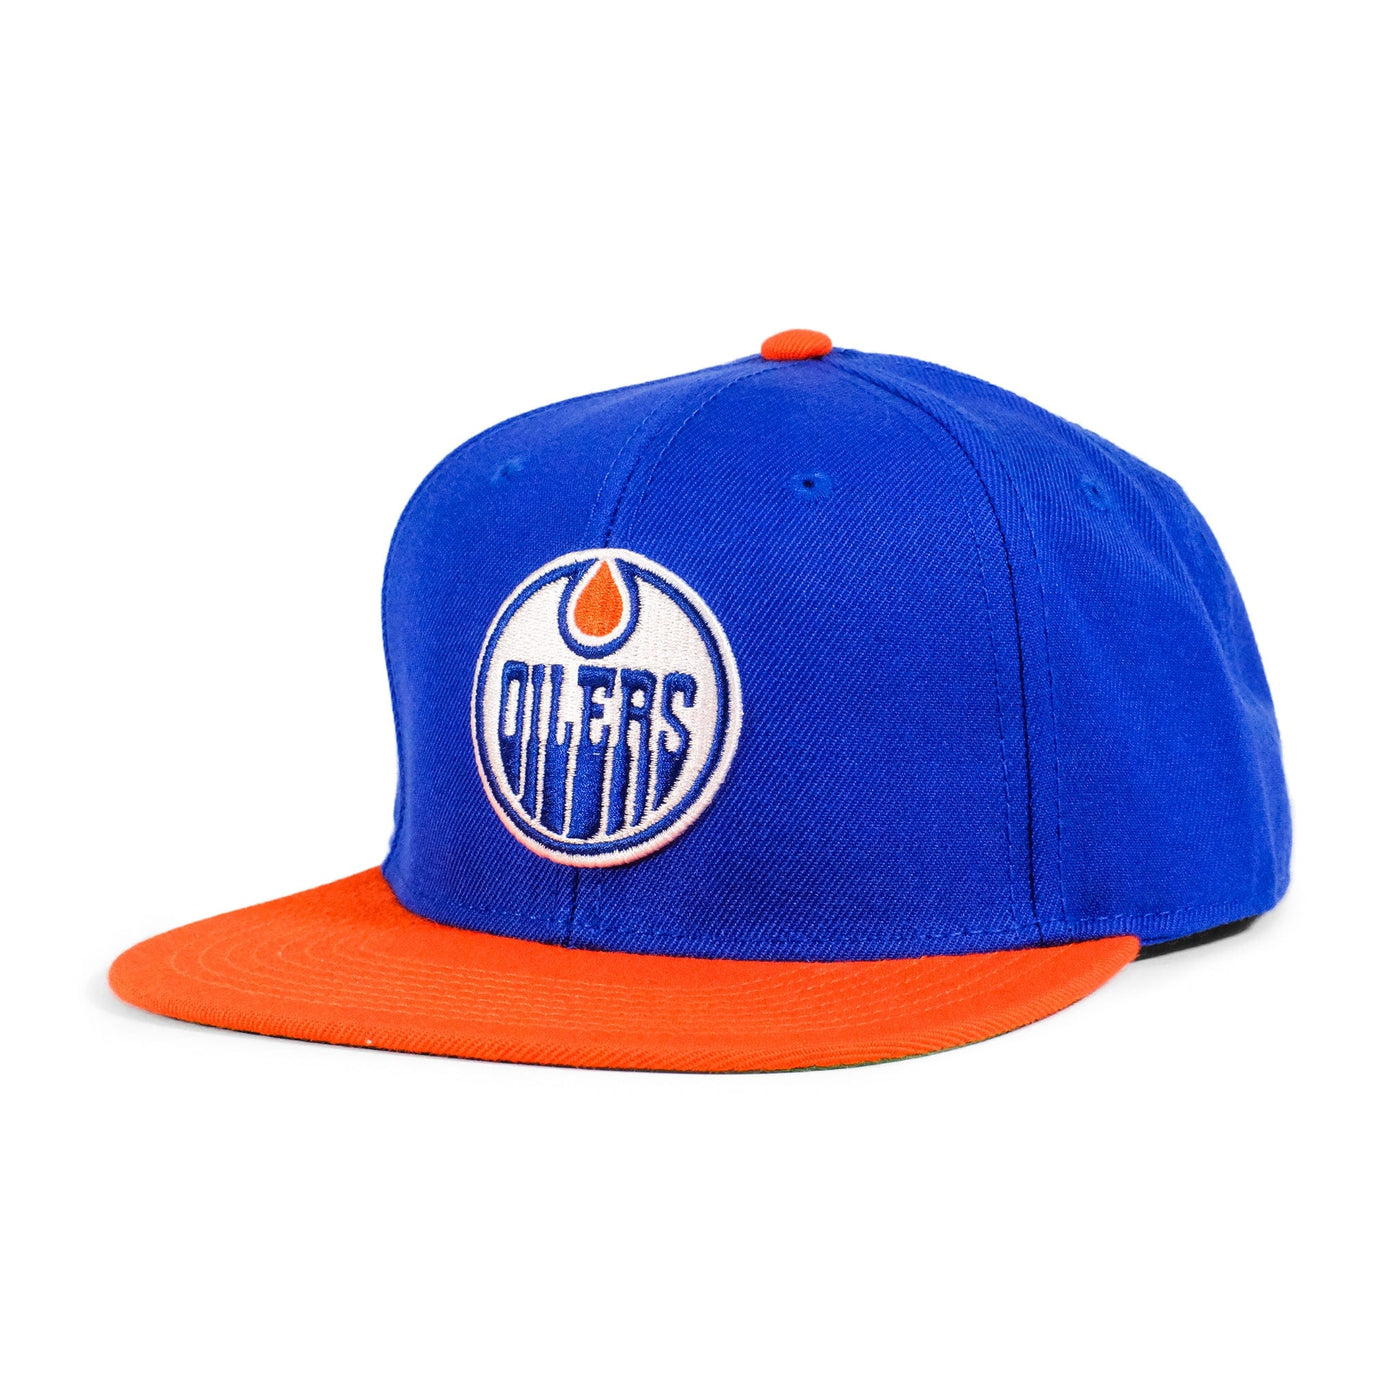 Vintage Edmonton Oilers NHL Snapback Hat